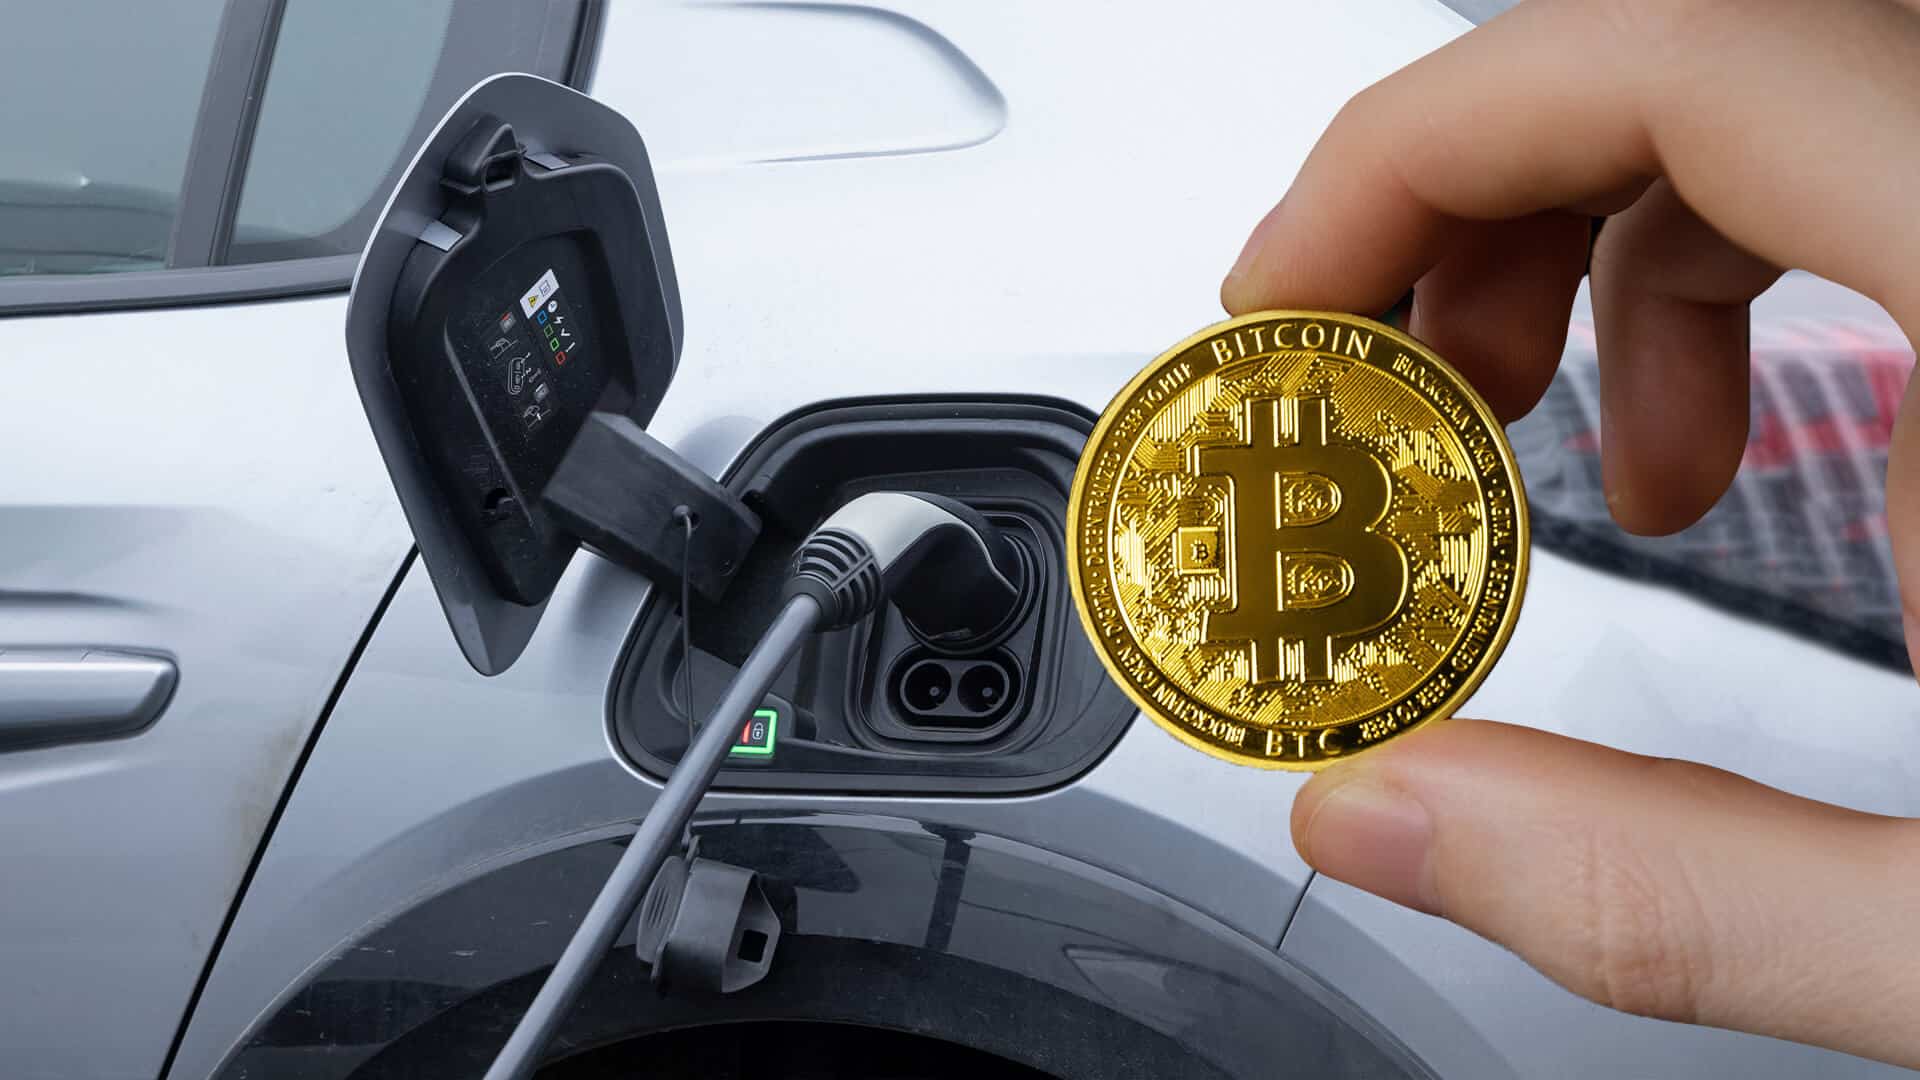 Vehículos eléctricos de todo el mundo podrían usar Bitcoin para sus cargas con esta app